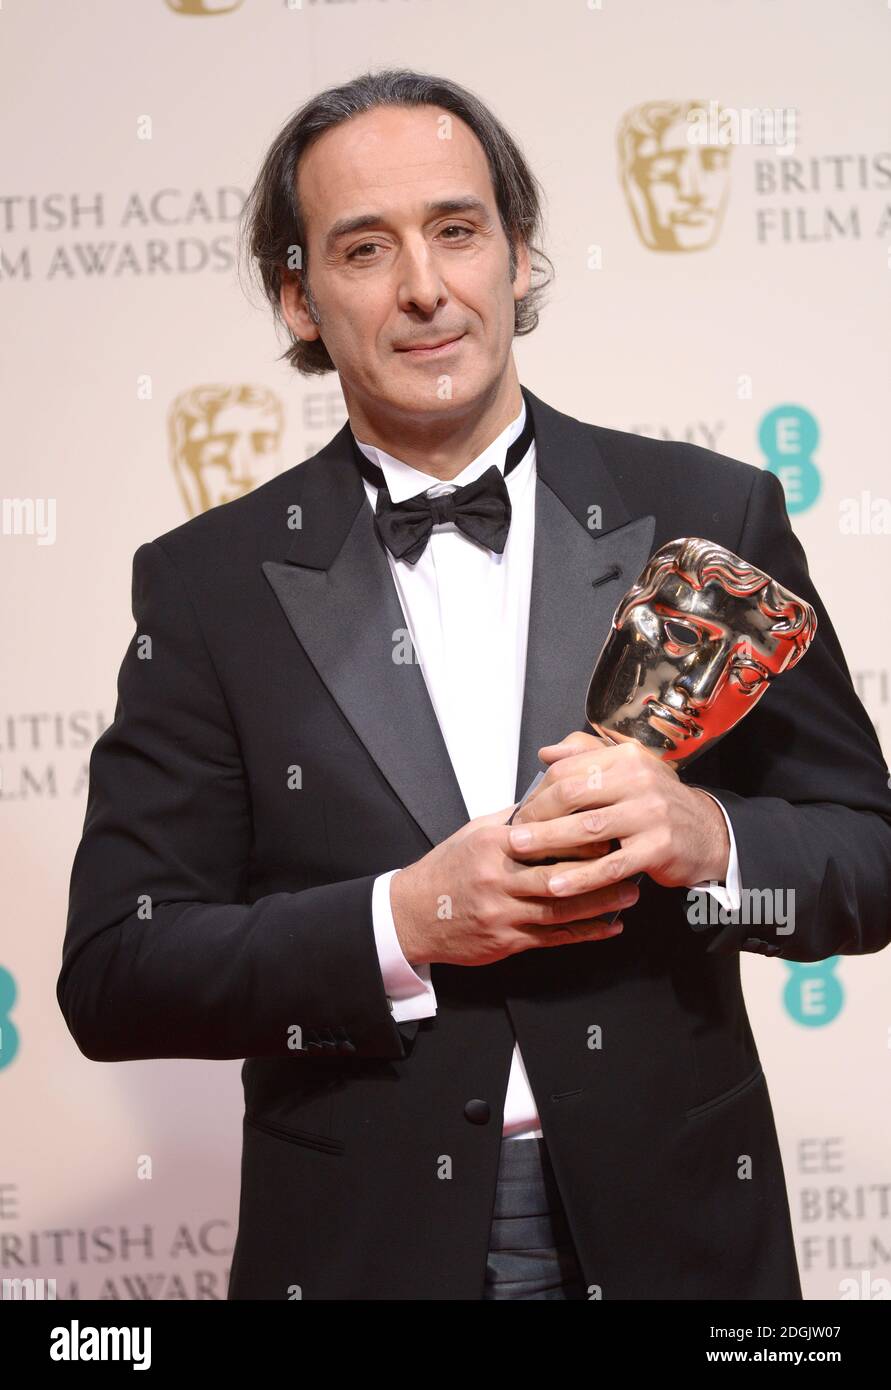 Alexandre Desplat ha vinto il premio originale per la musica per il "Grand Budapest Hotel" nella Sala Stampa dell'EE British Academy Film Awards 2015 che si è tenuto presso la Royal Opera House di Covent Garden, Londra UK. Foto Stock